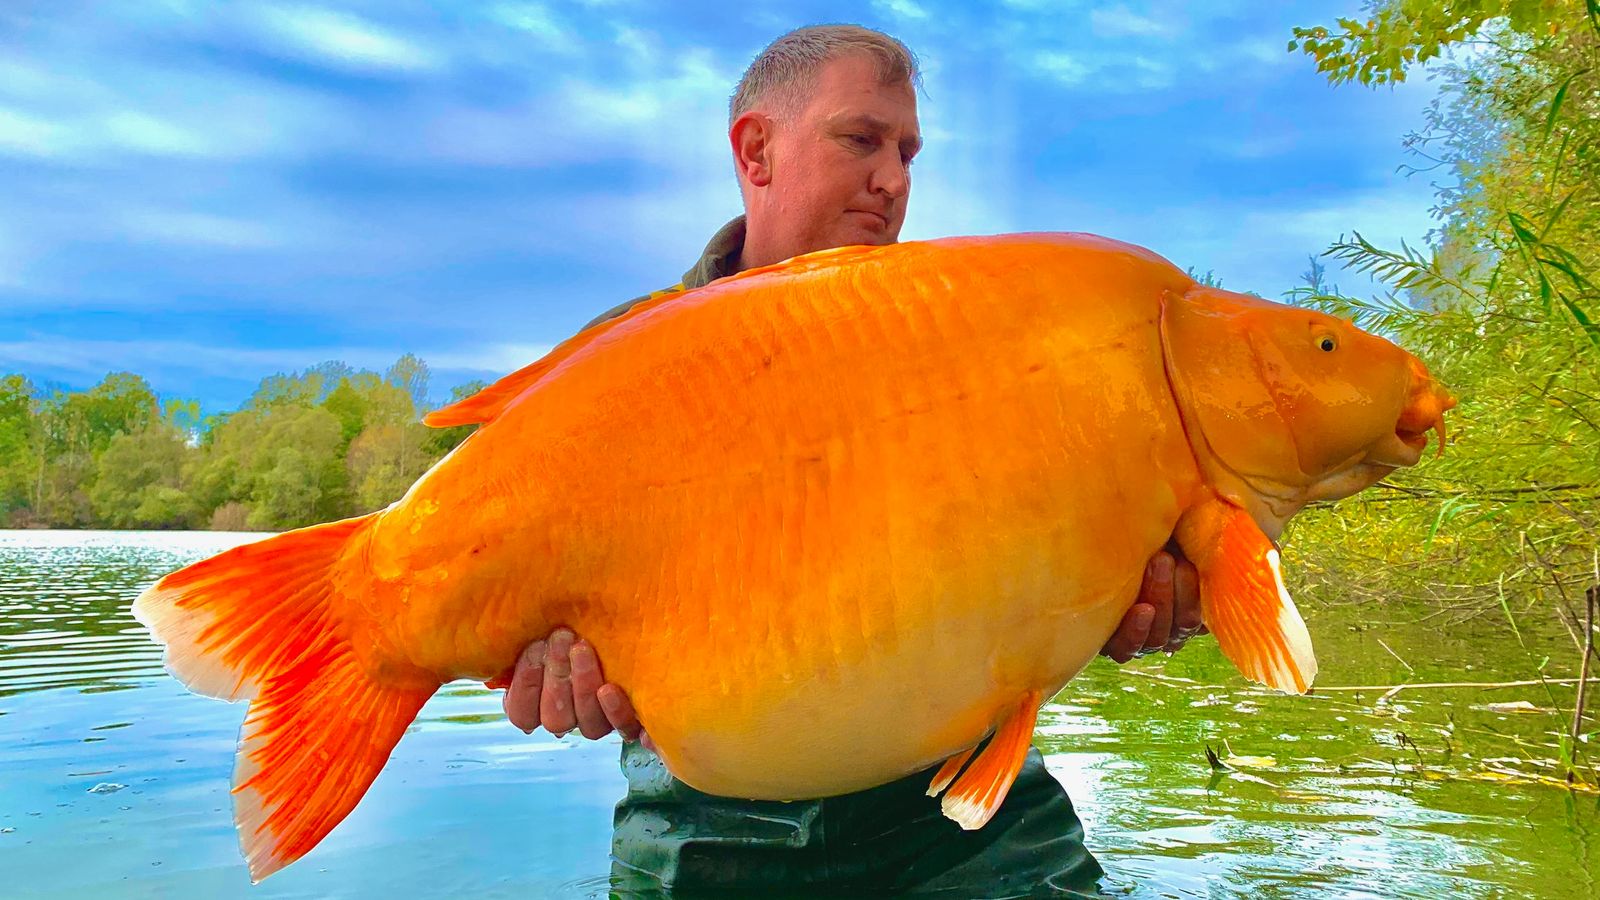 英国渔夫在法国香槟省蓝水湖钓到重达30公斤的金鱼 有望打破世界纪录